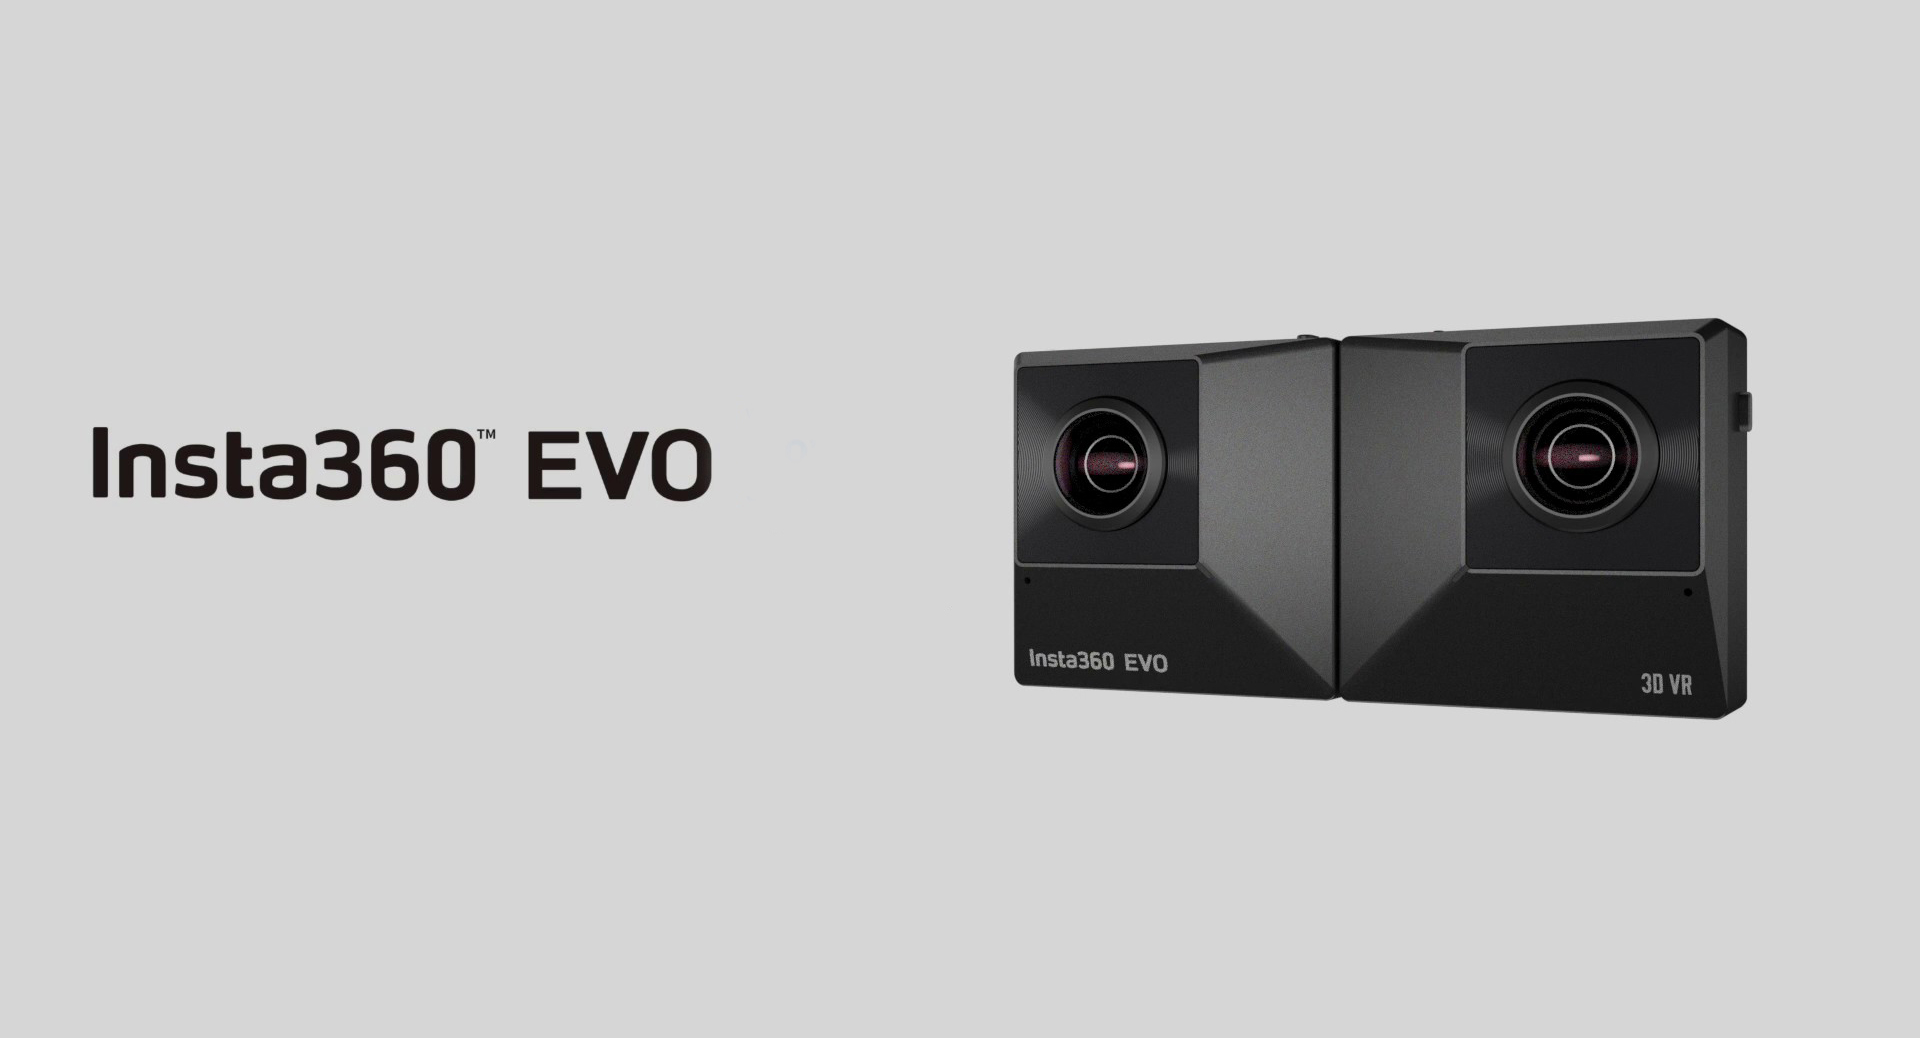 Понорамная камера Insta360 EVO уже в аренде!